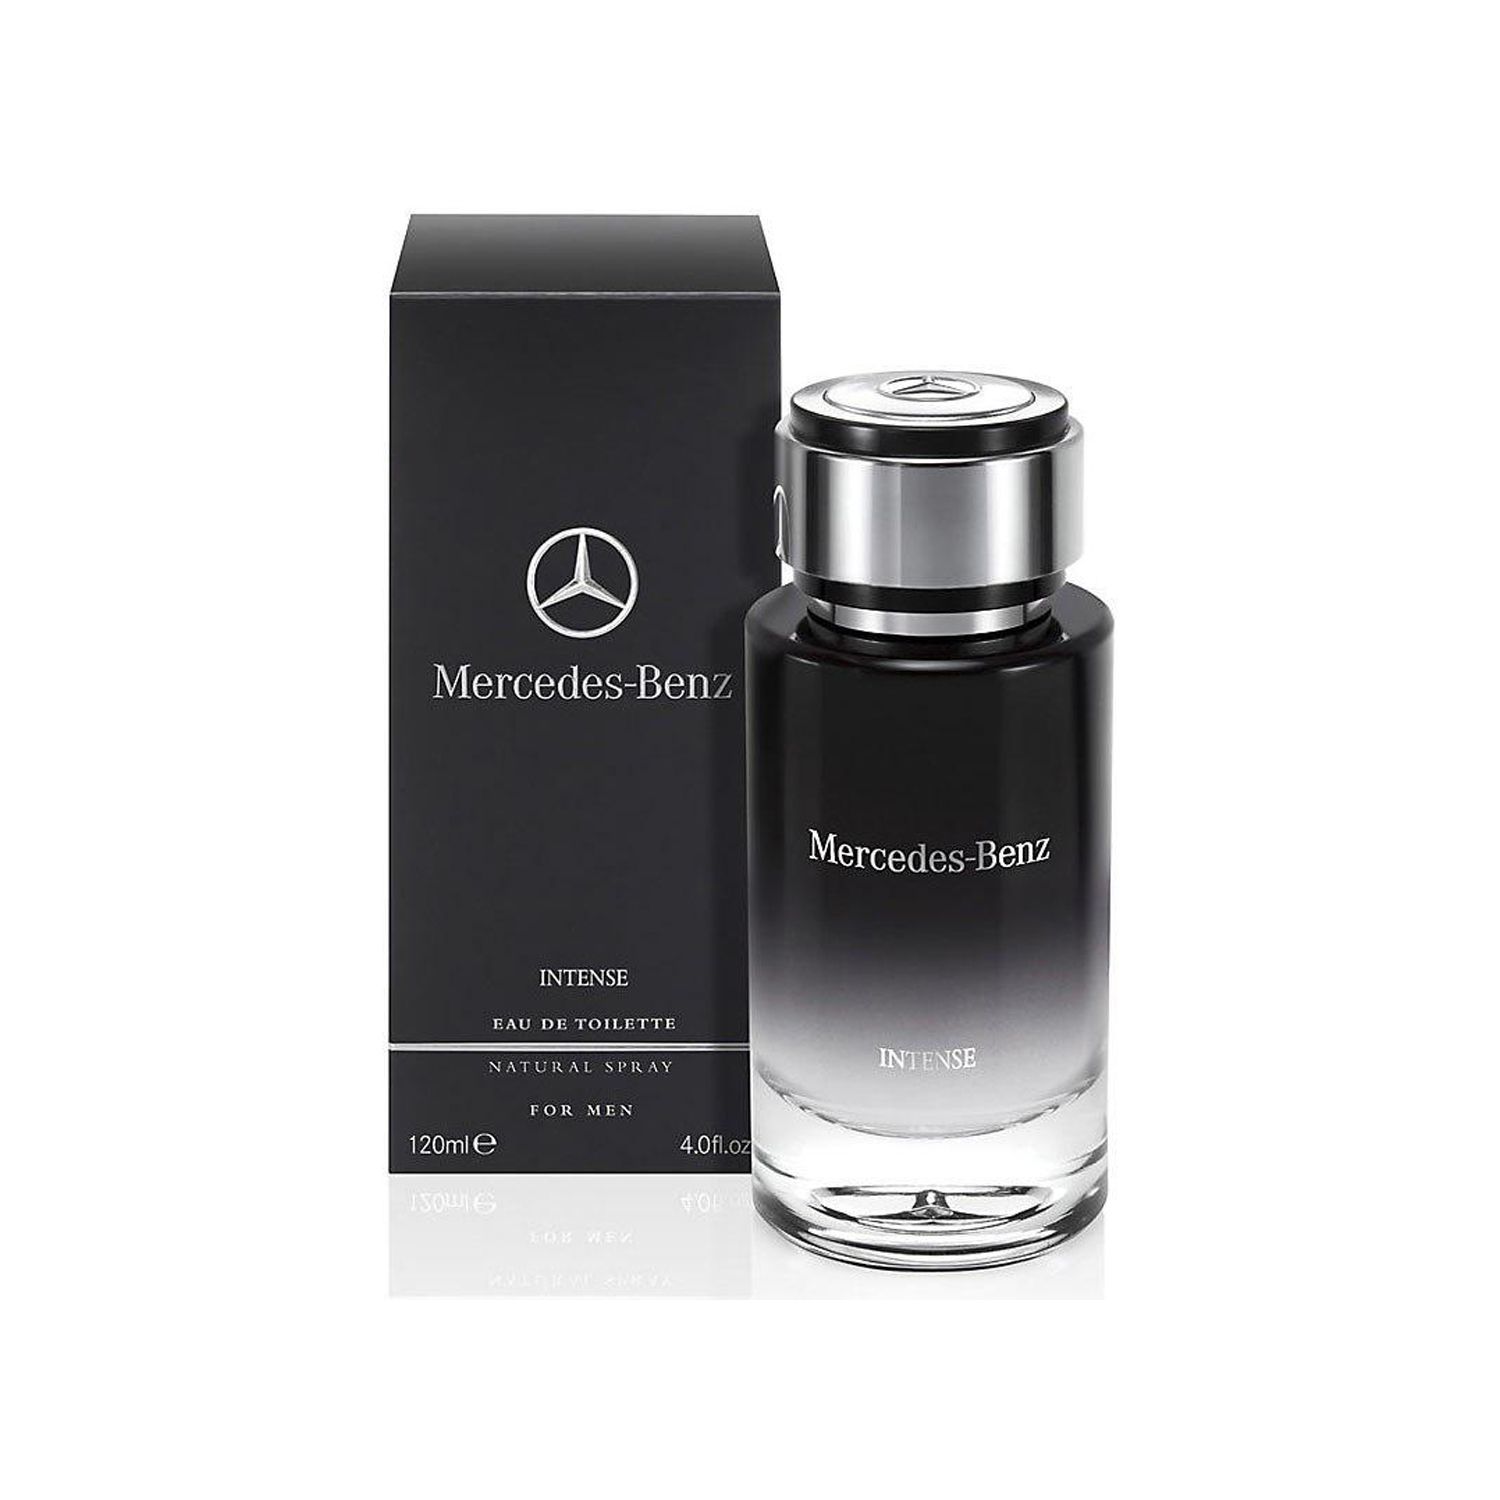 ادو تویلت مردانه مرسدس بنز مدل Mercedes Benz Intense حجم 120 میلی لیتر